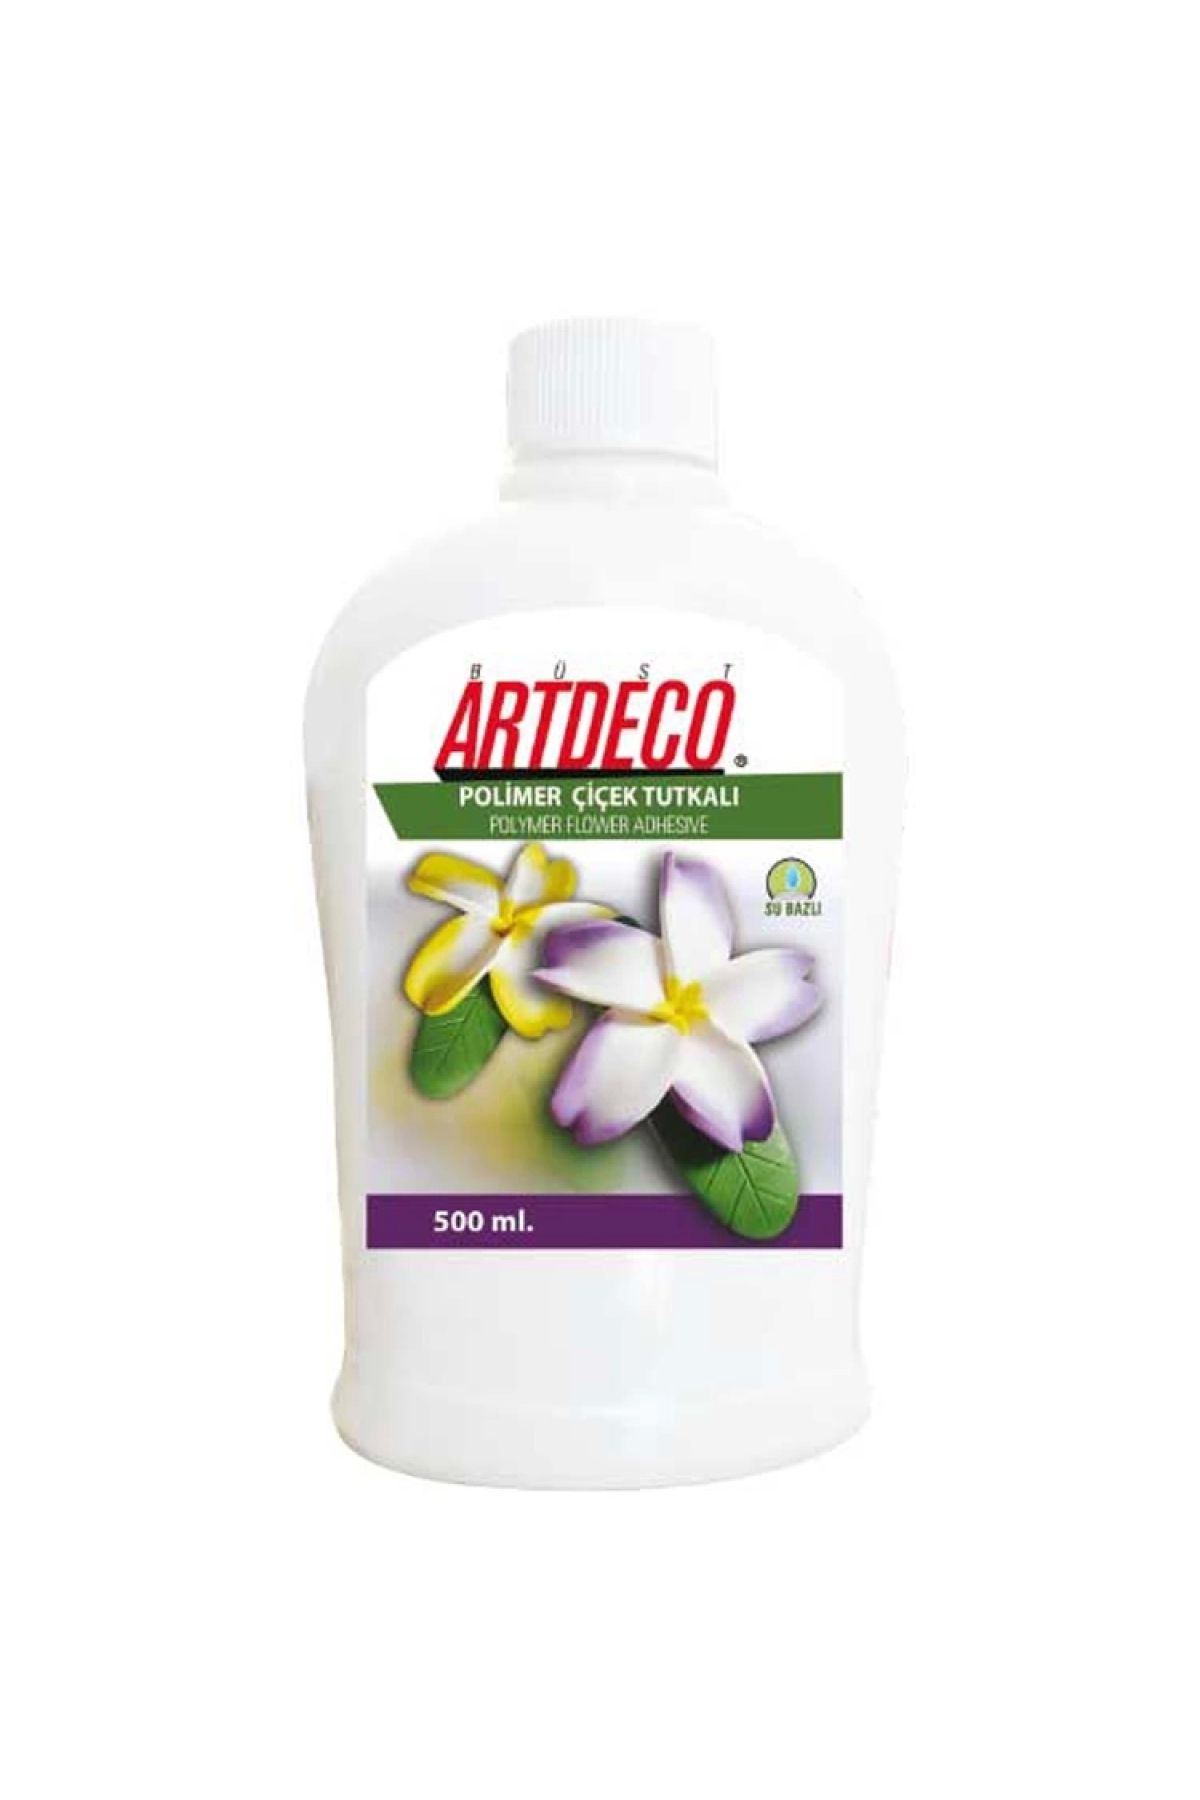 Artdeco Polimer Çiçek Tutkalı 500 ml